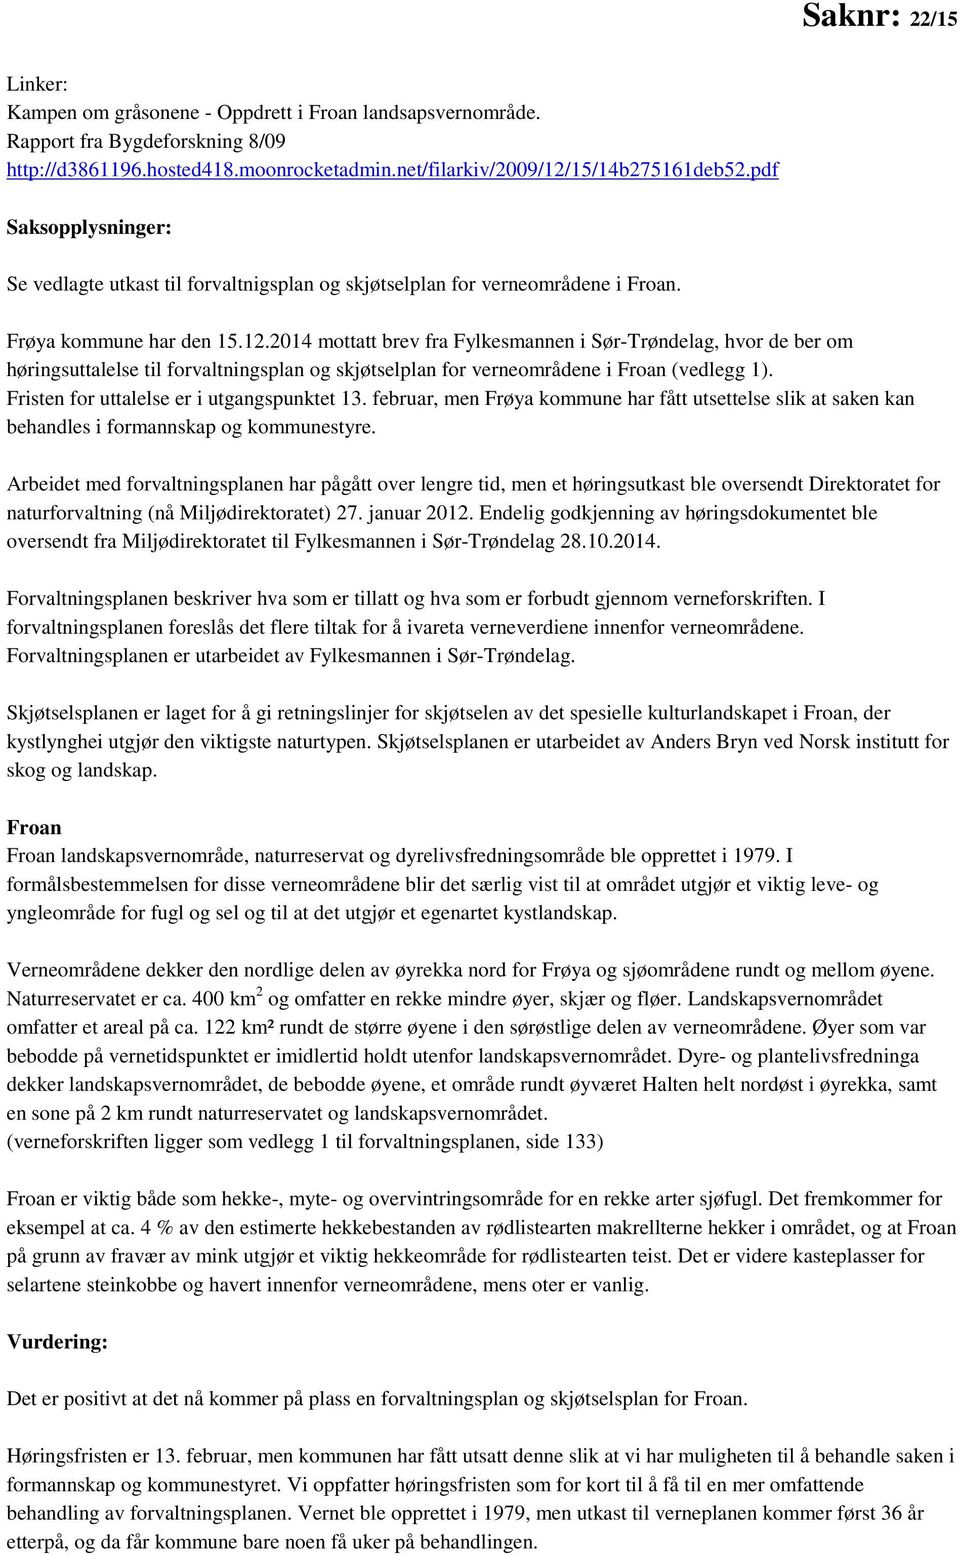 2014 mottatt brev fra Fylkesmannen i Sør-Trøndelag, hvor de ber om høringsuttalelse til forvaltningsplan og skjøtselplan for verneområdene i Froan (vedlegg 1).